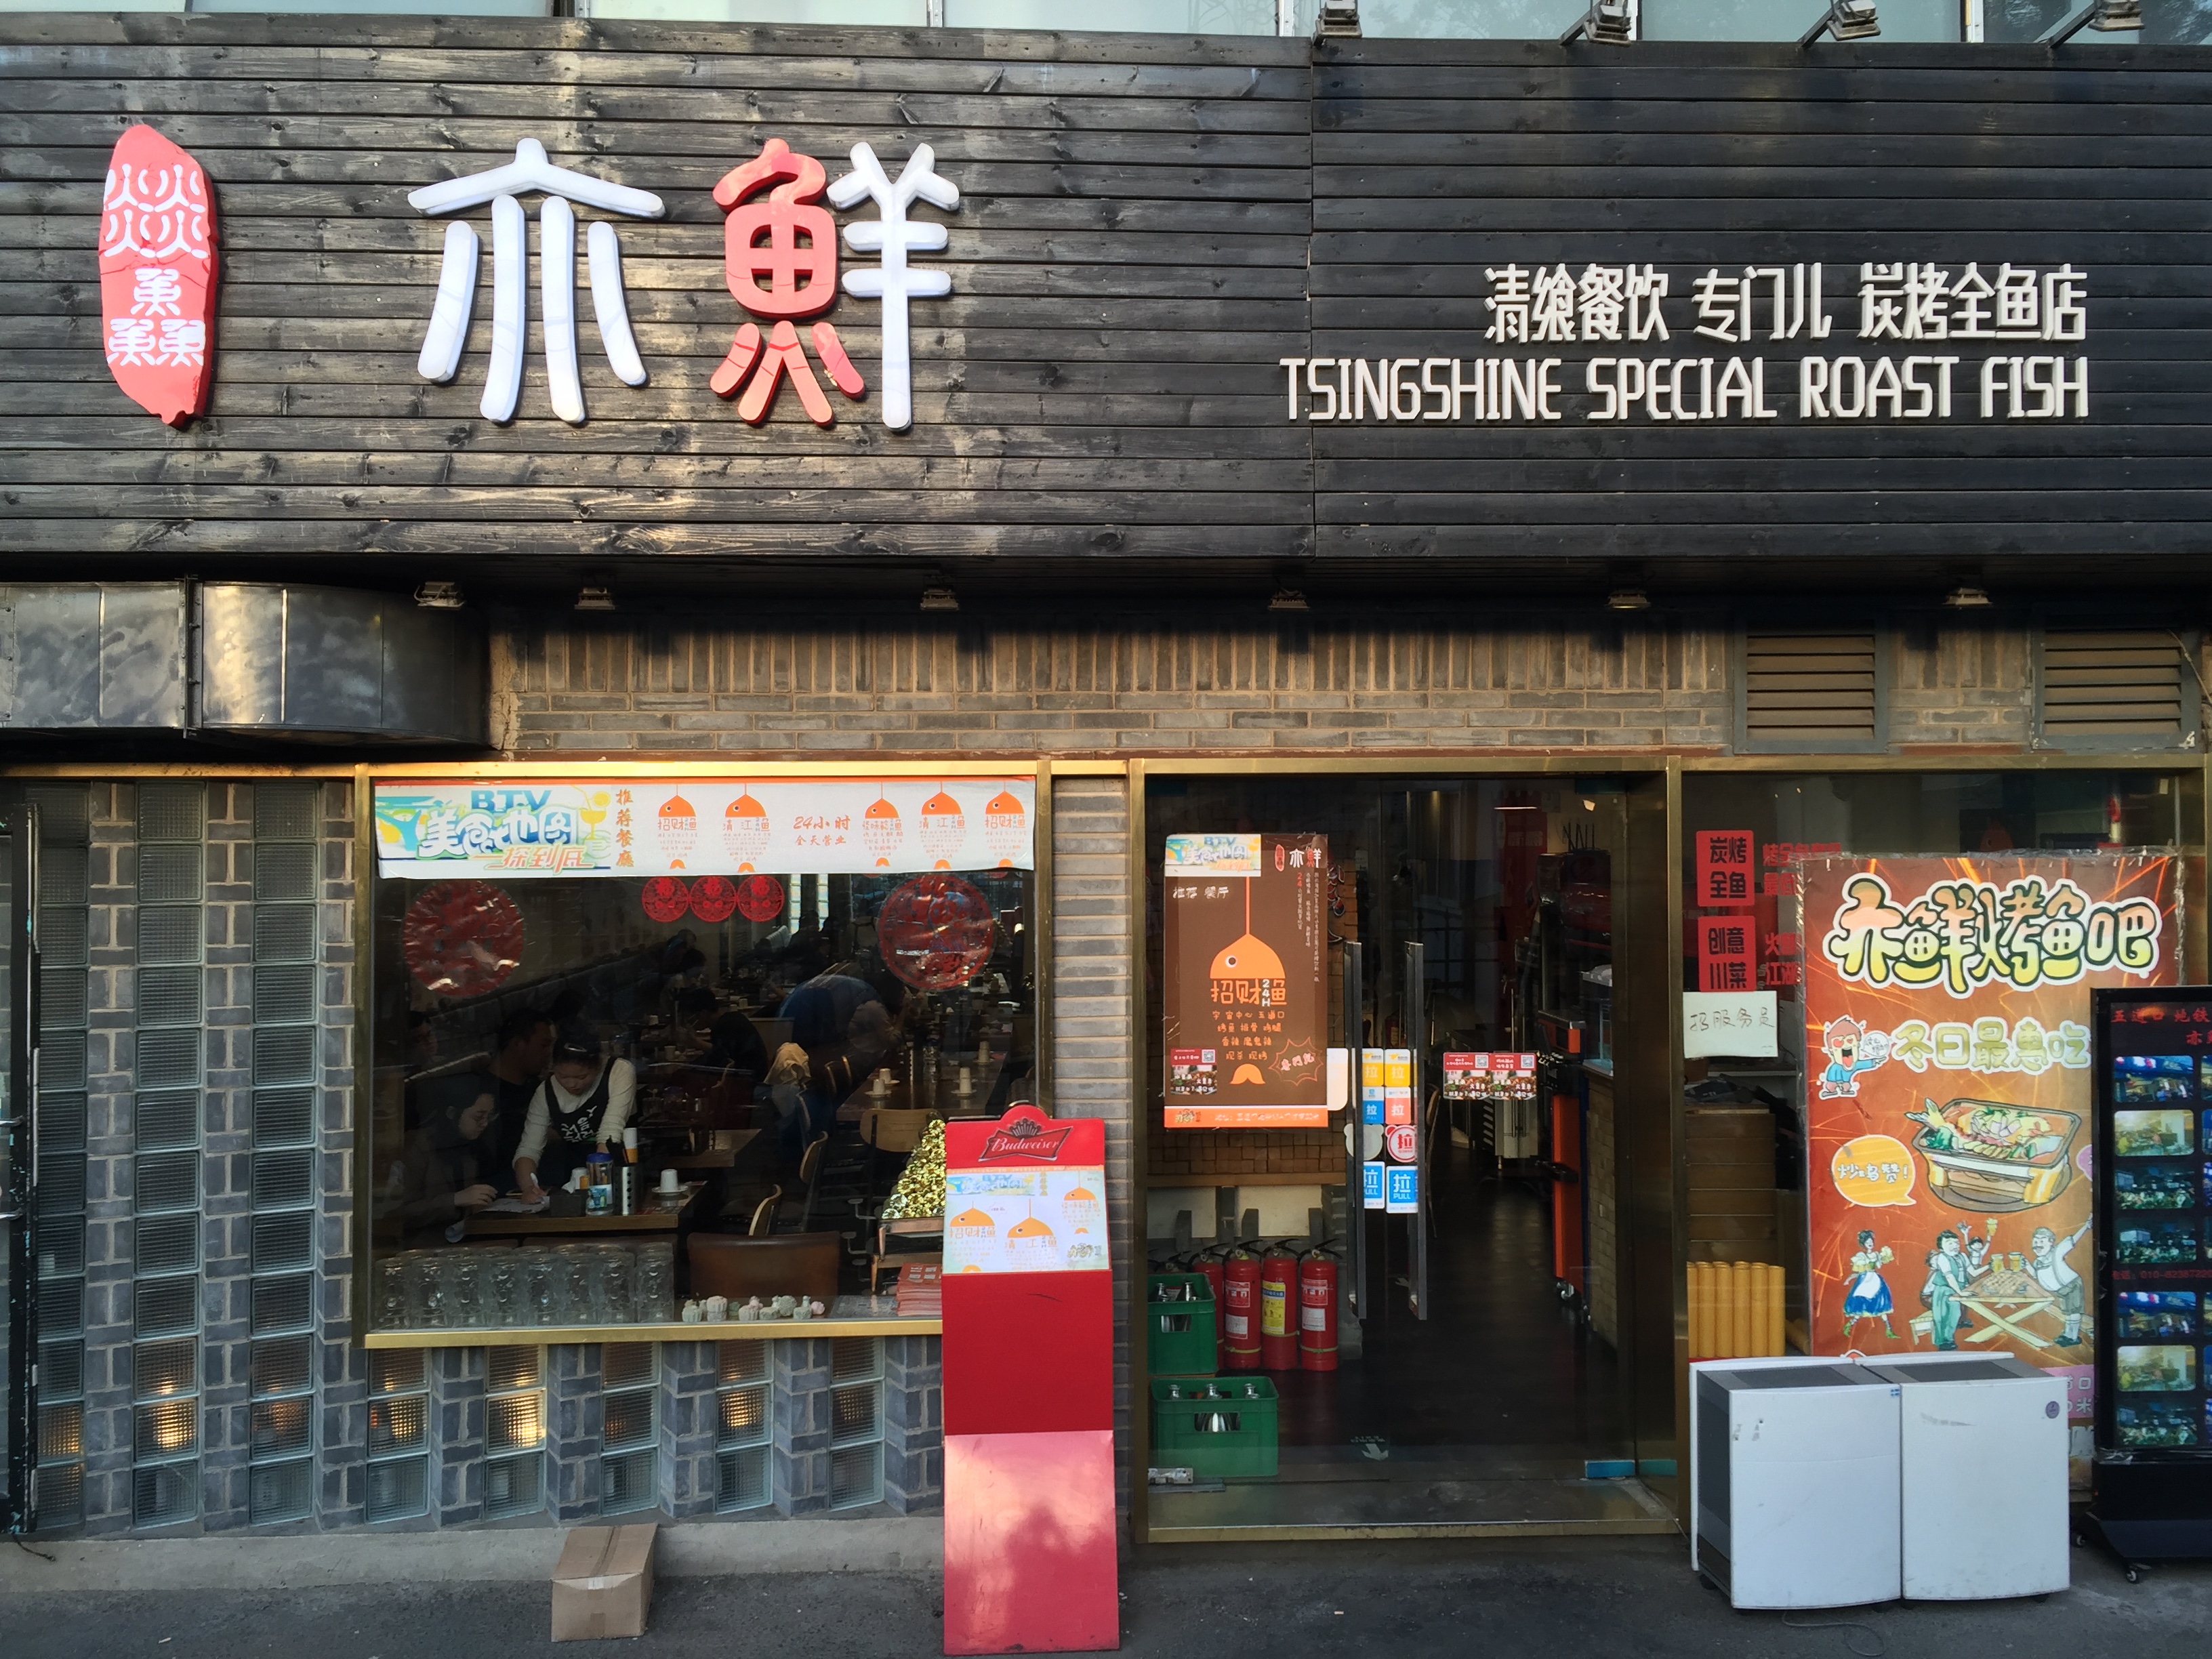 清华博士遇见掌贝,北京五道口最火烤鱼店诞生!